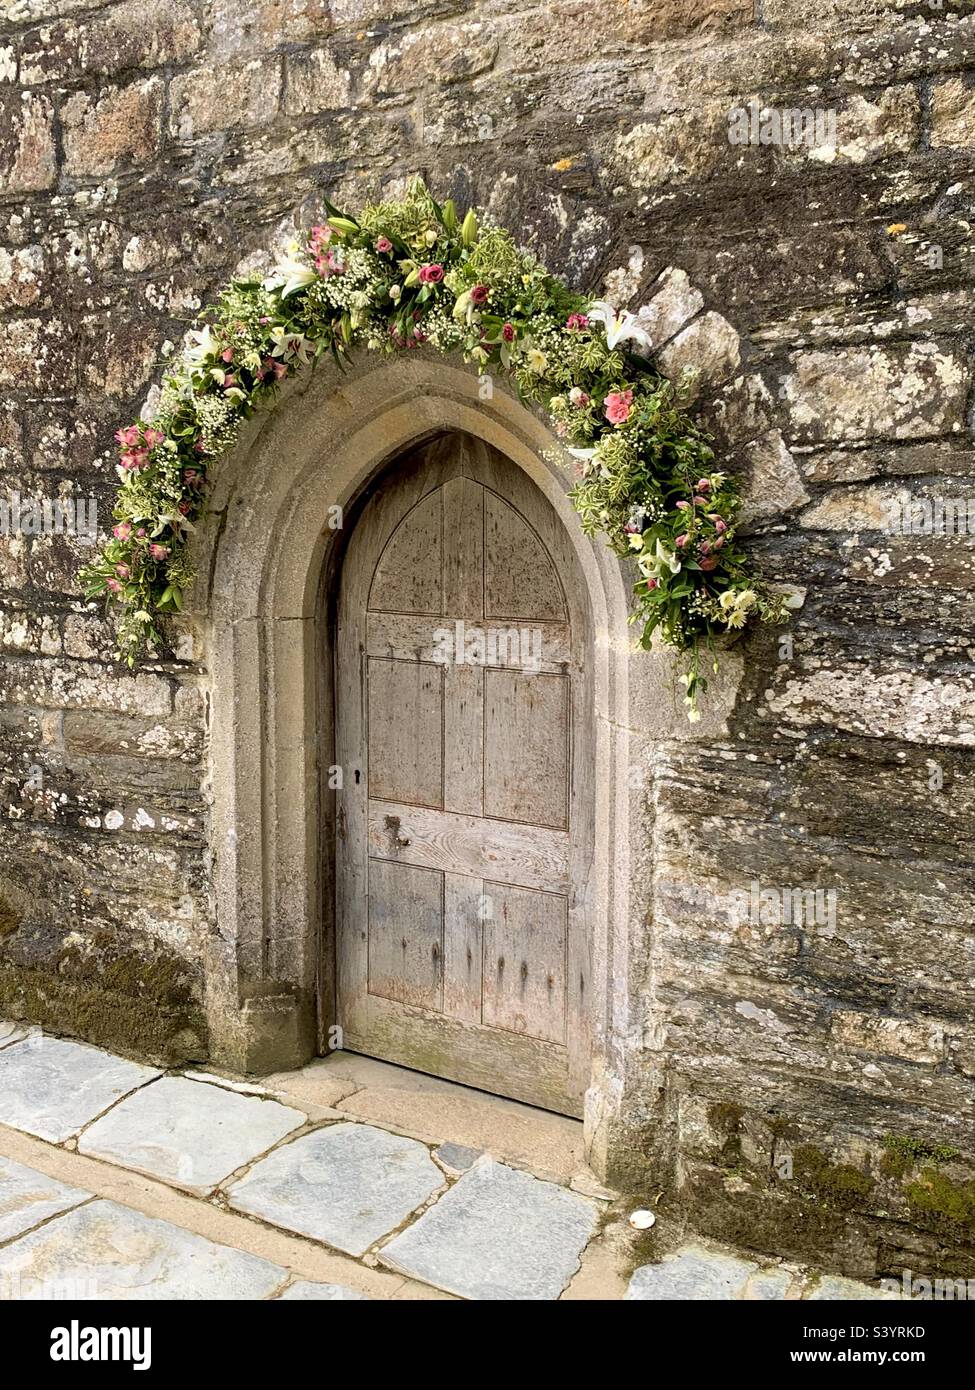 Magnifique jolie porte d'église en bois avec arche en pierre et belle décoration florale au-dessus de la porte pour un mariage, St juste à Roseland, Cornouailles, Angleterre Banque D'Images